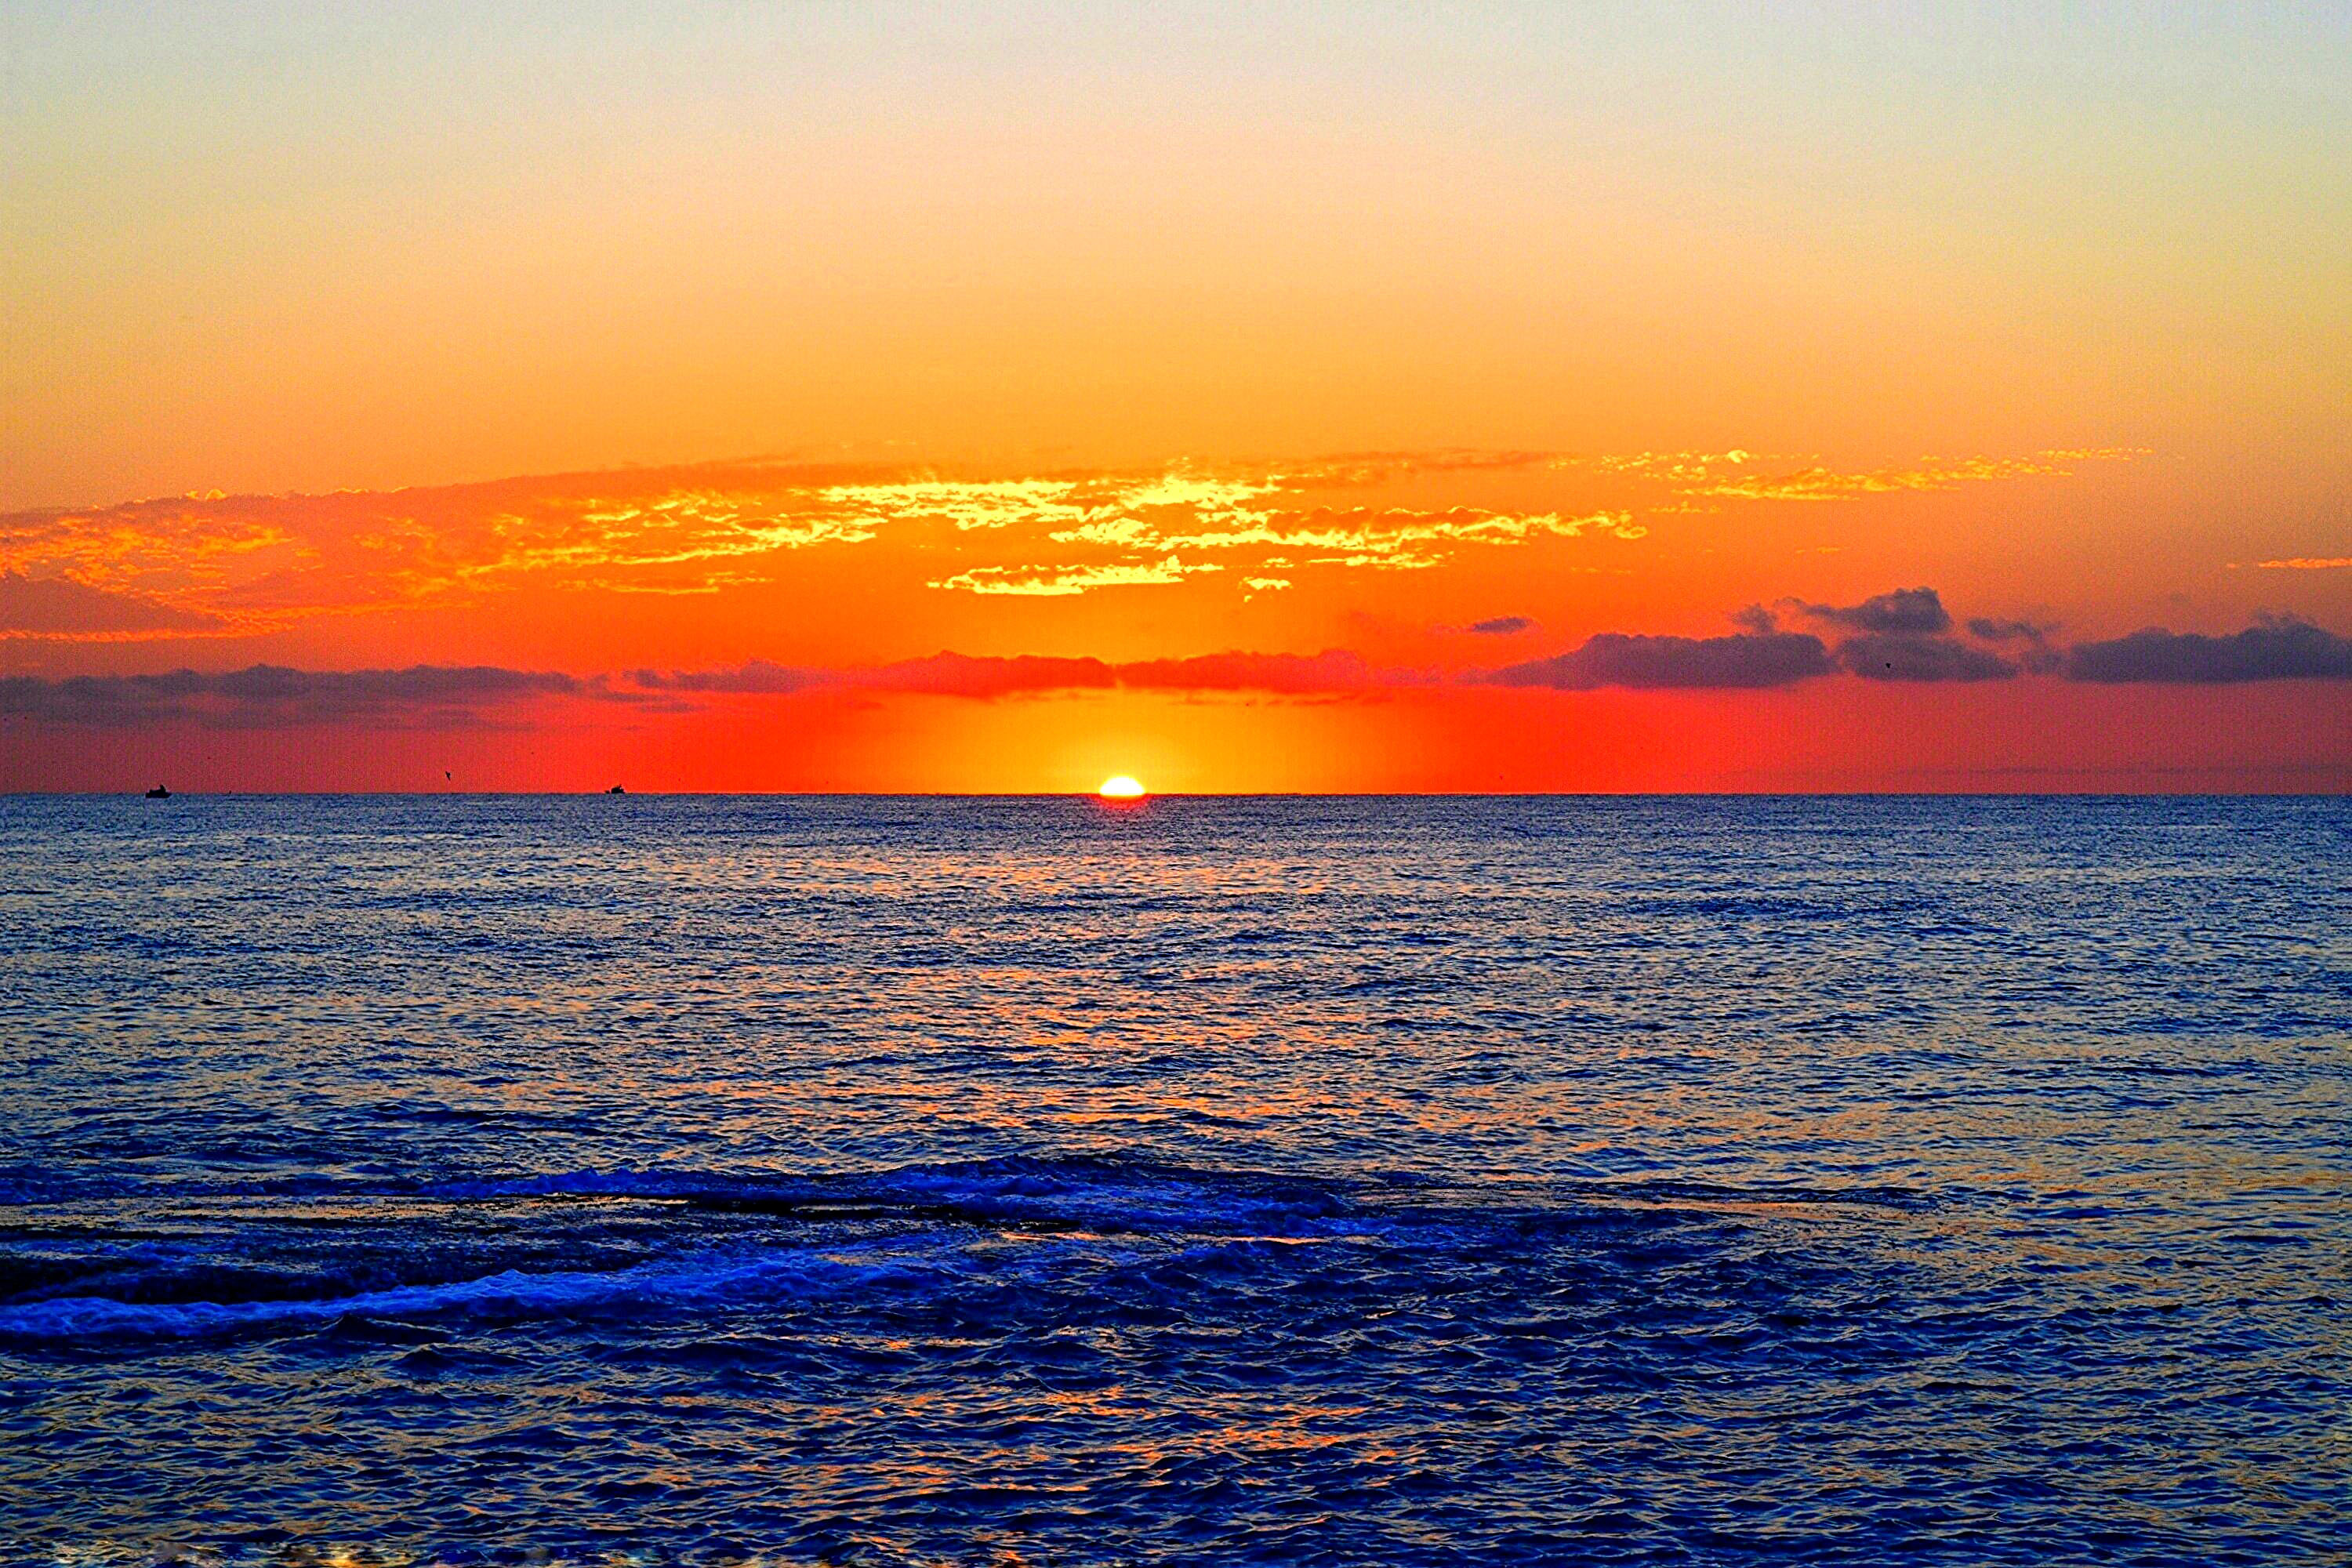 Hình nền đẹp  Tổng hợp 50 hình nền đẹp nhất cho máy tính  Sunset beach Hình  nền Phong cảnh